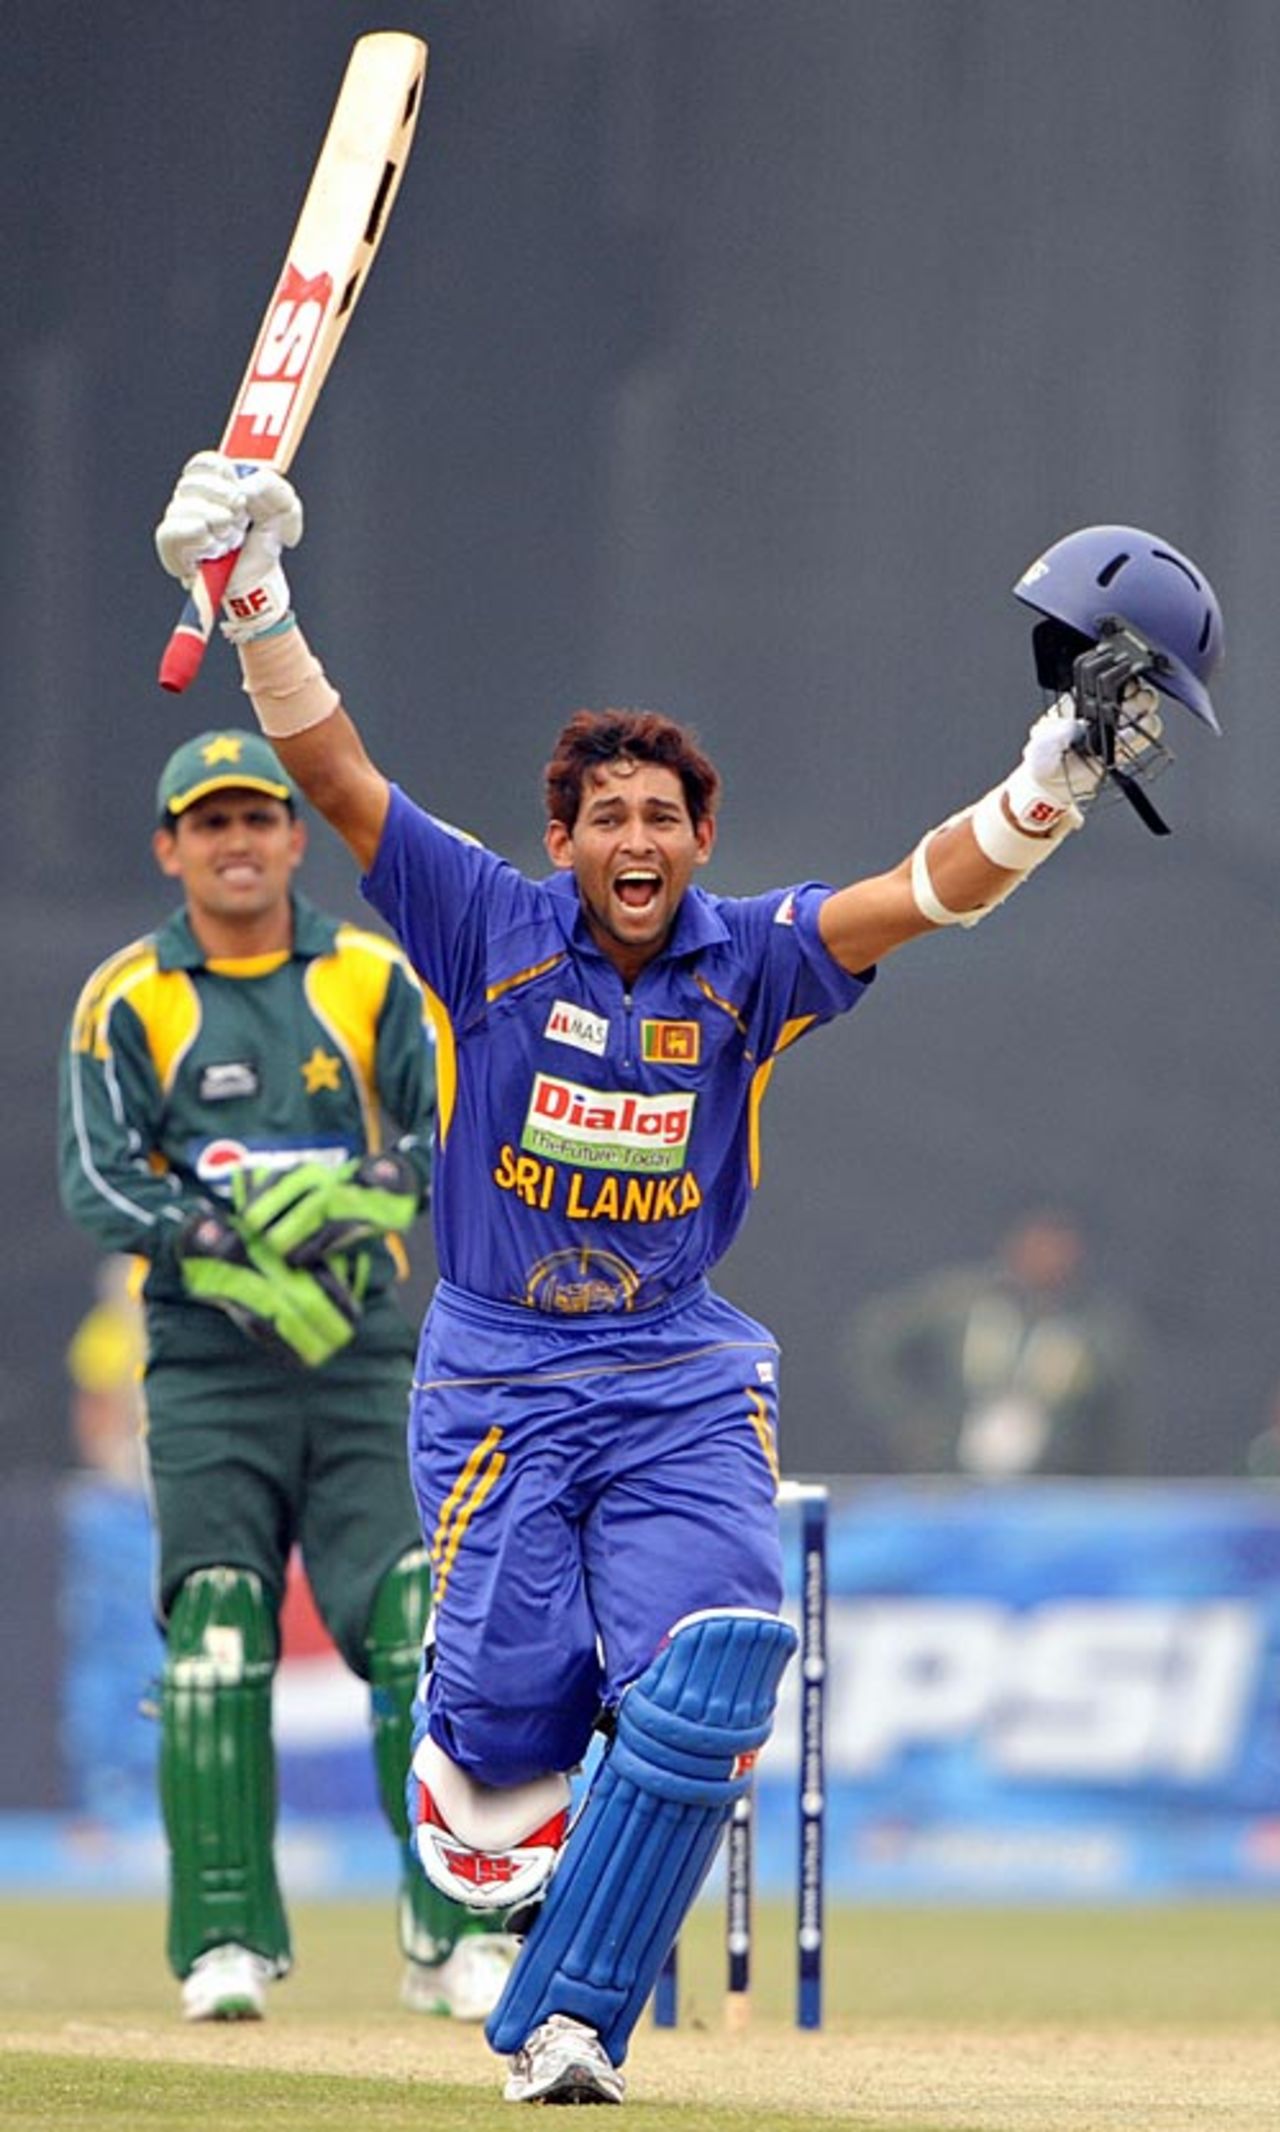 Tillakaratne Dilshan raises his arms after reaching his hundred, Pakistan v Sri Lanka, 3rd ODI, Lahore, January 24, 2009